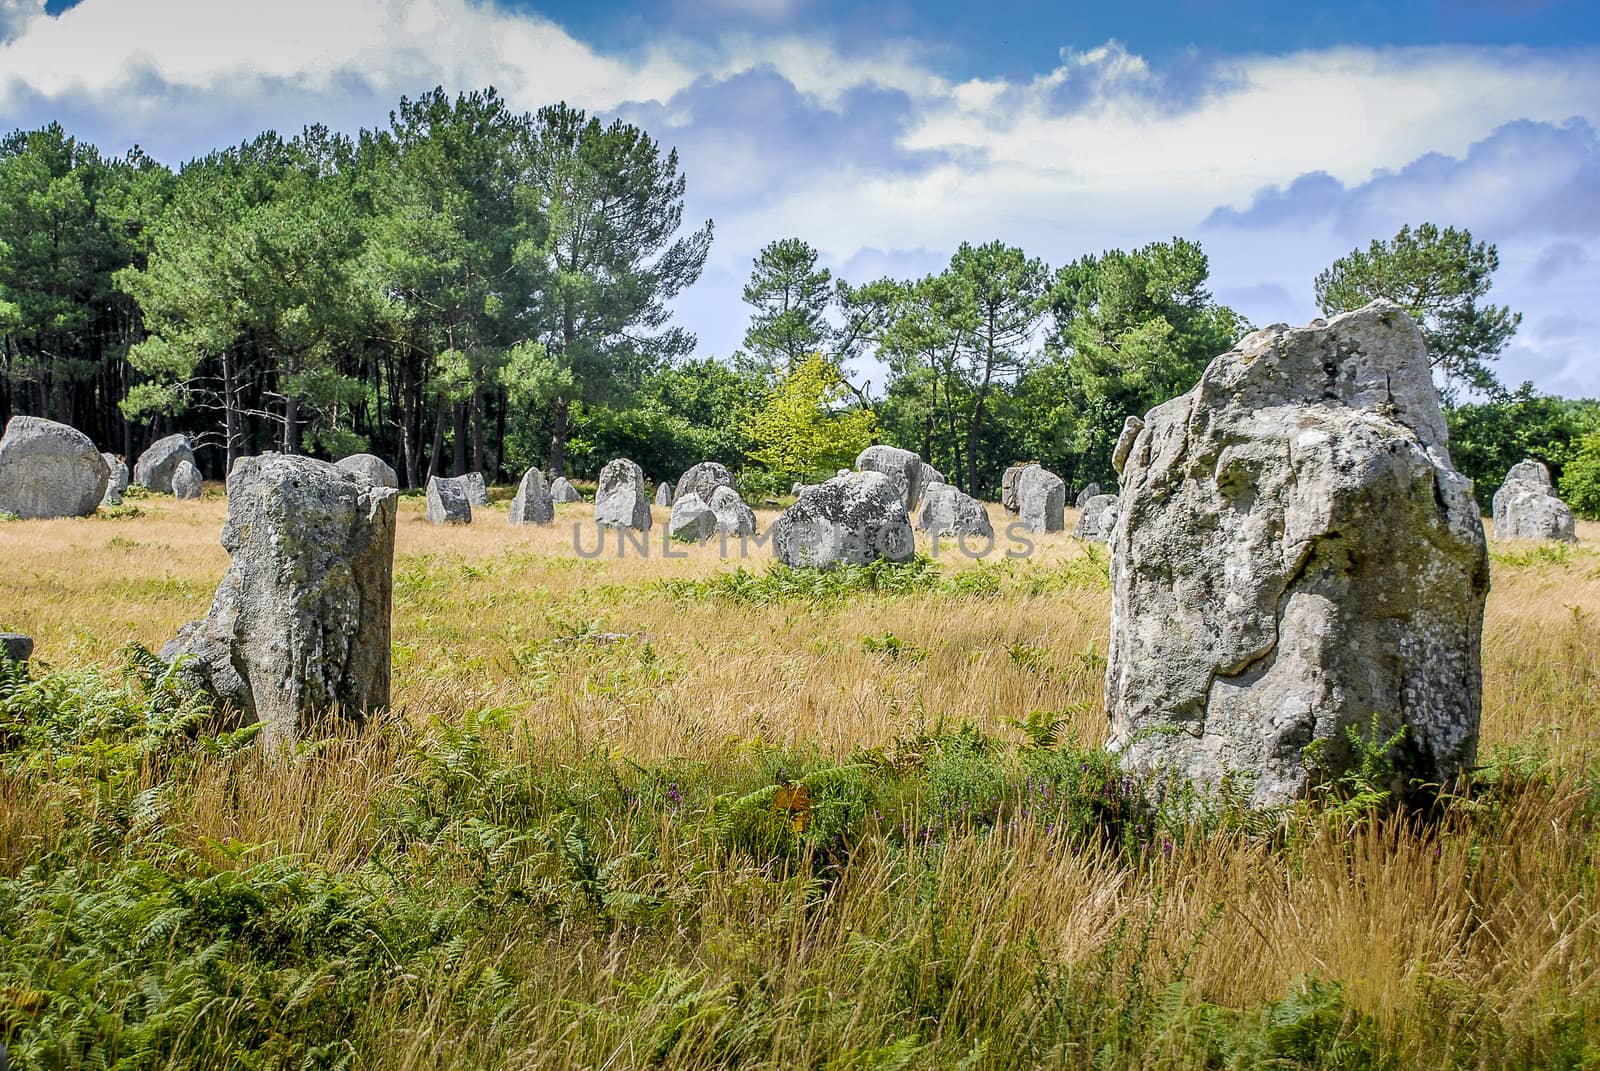 Field of dolmens in Carnac